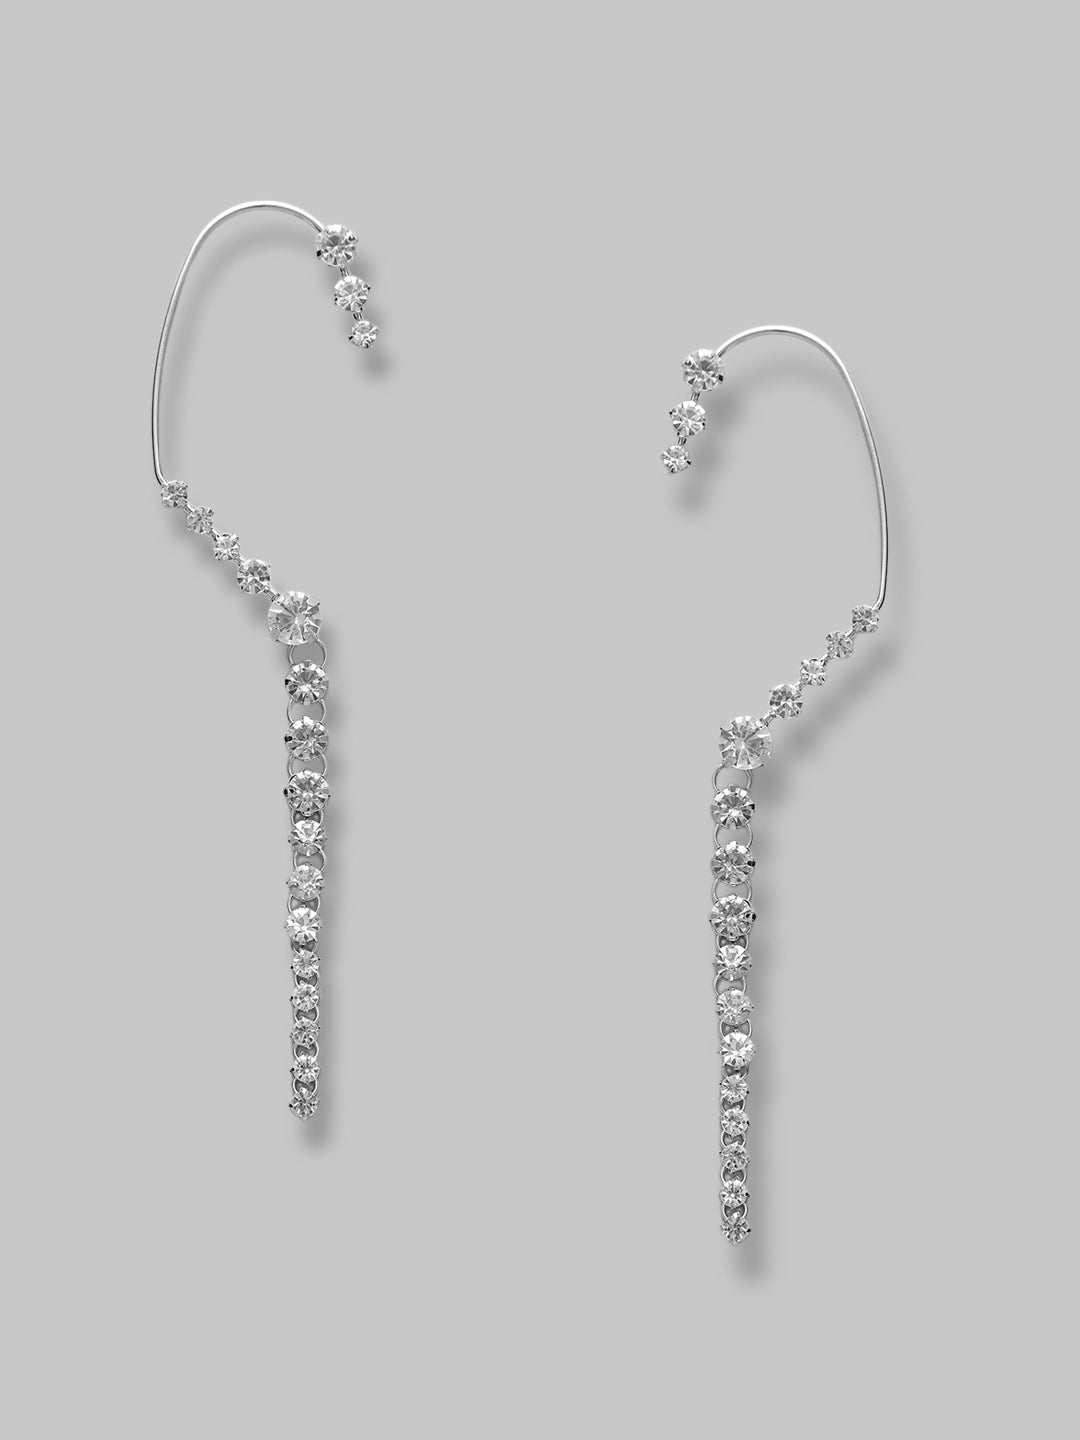 Fancy Latest Stone Silver Strings Ear Cuffs Earrings For Girls and Women